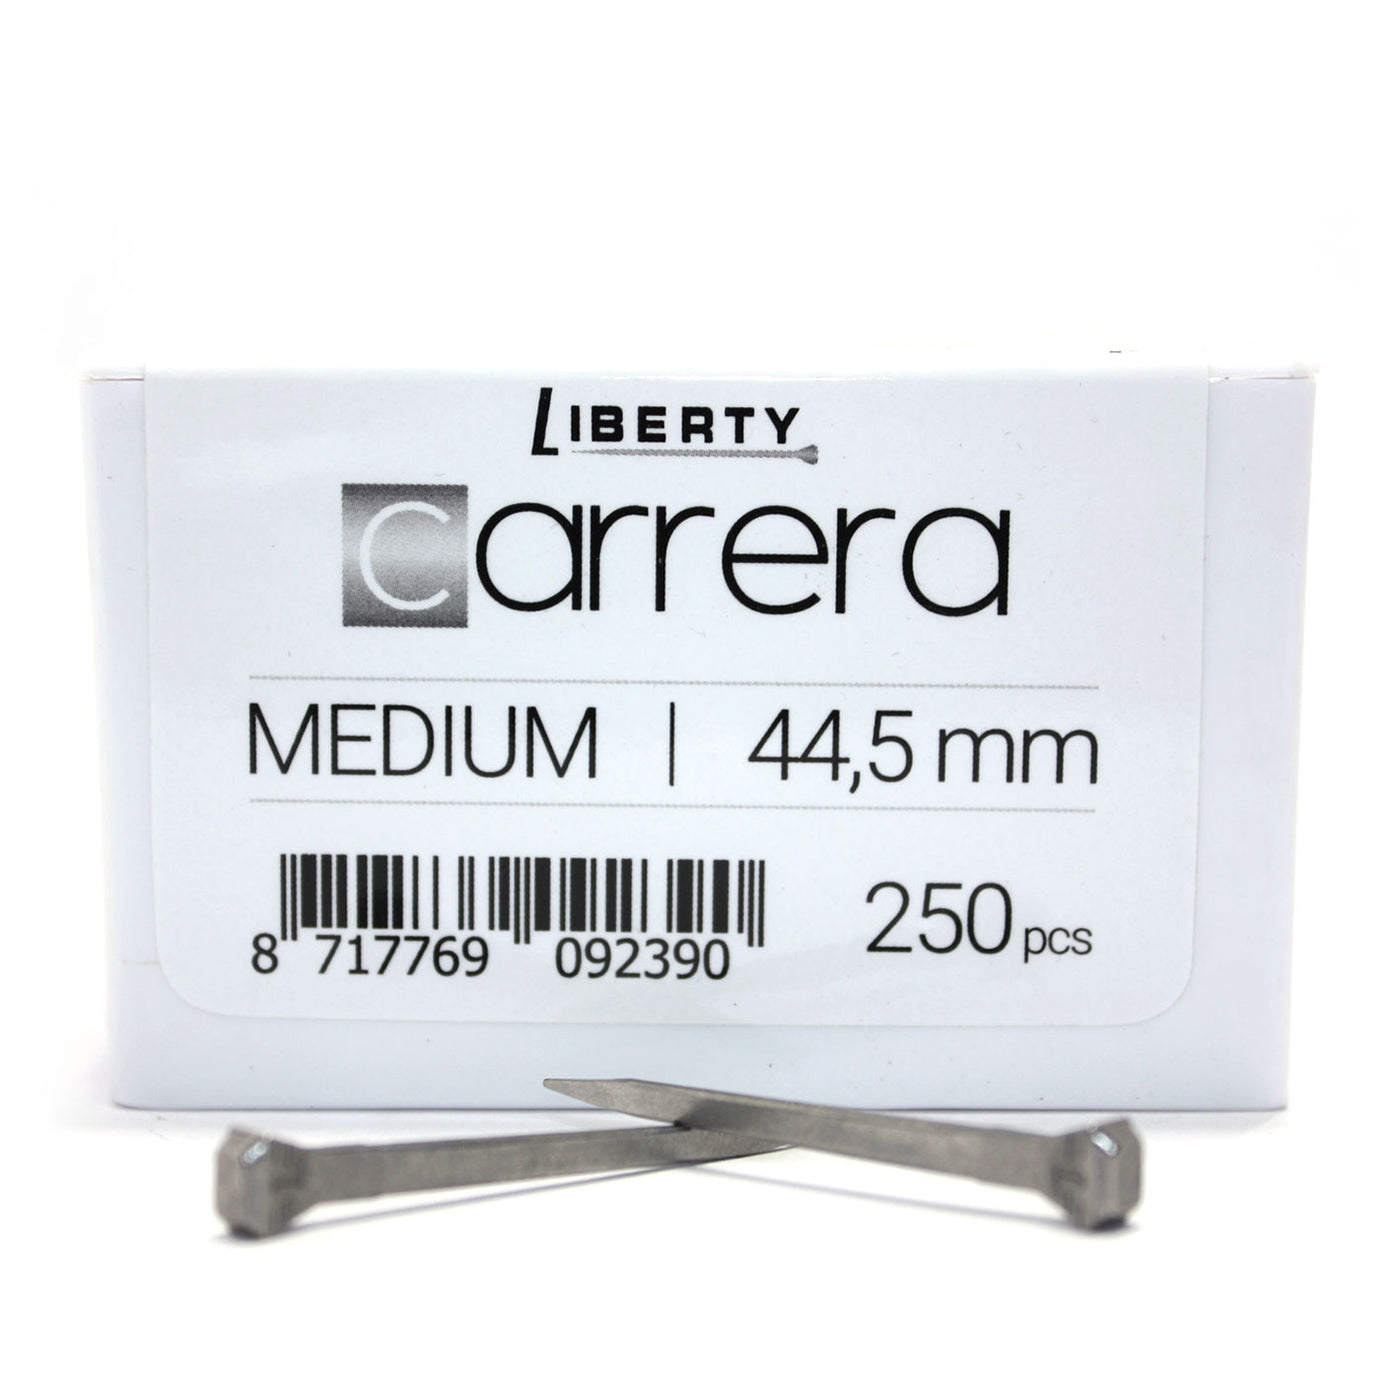 Liberty Carrera Medium Nails 250pcs